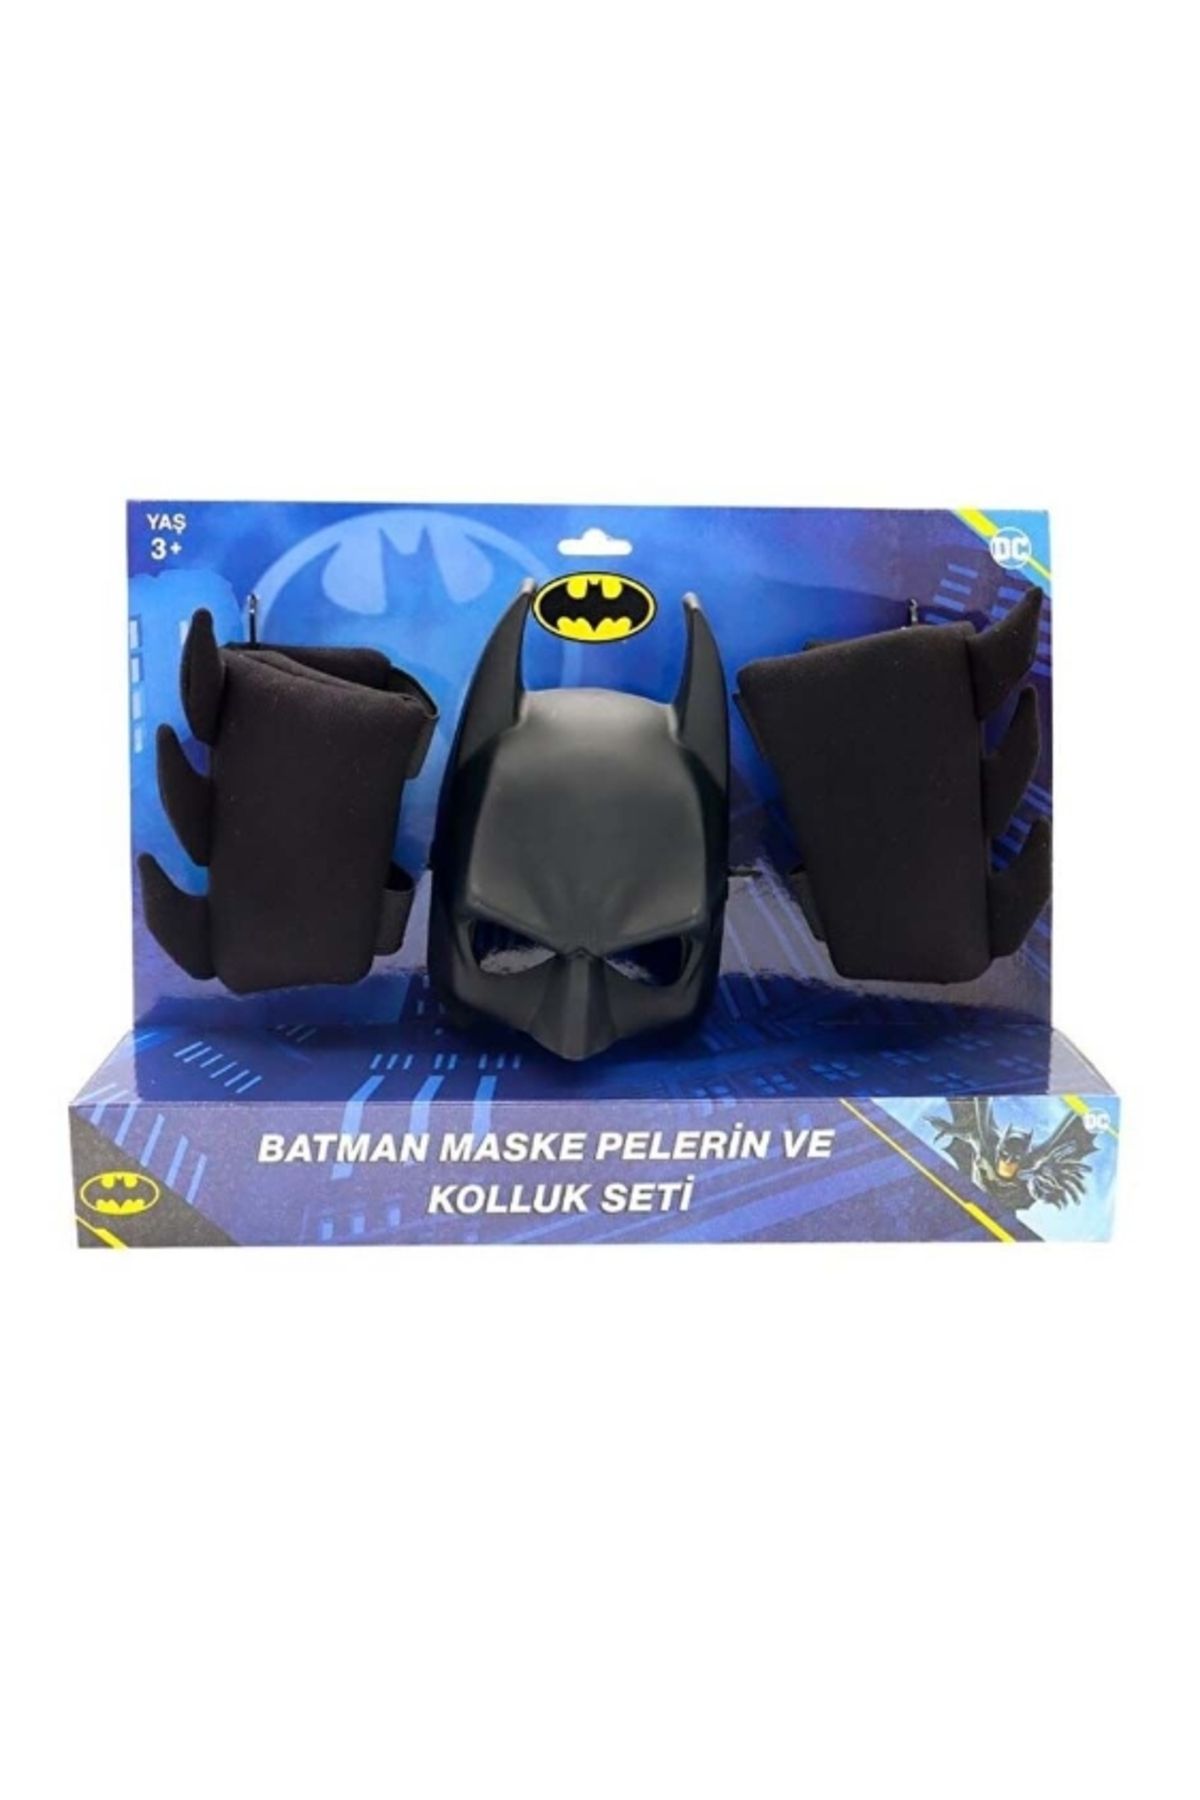 Batman Mega Oyuncak Batman Maske Pelerin Kolluk 3 Lü Set